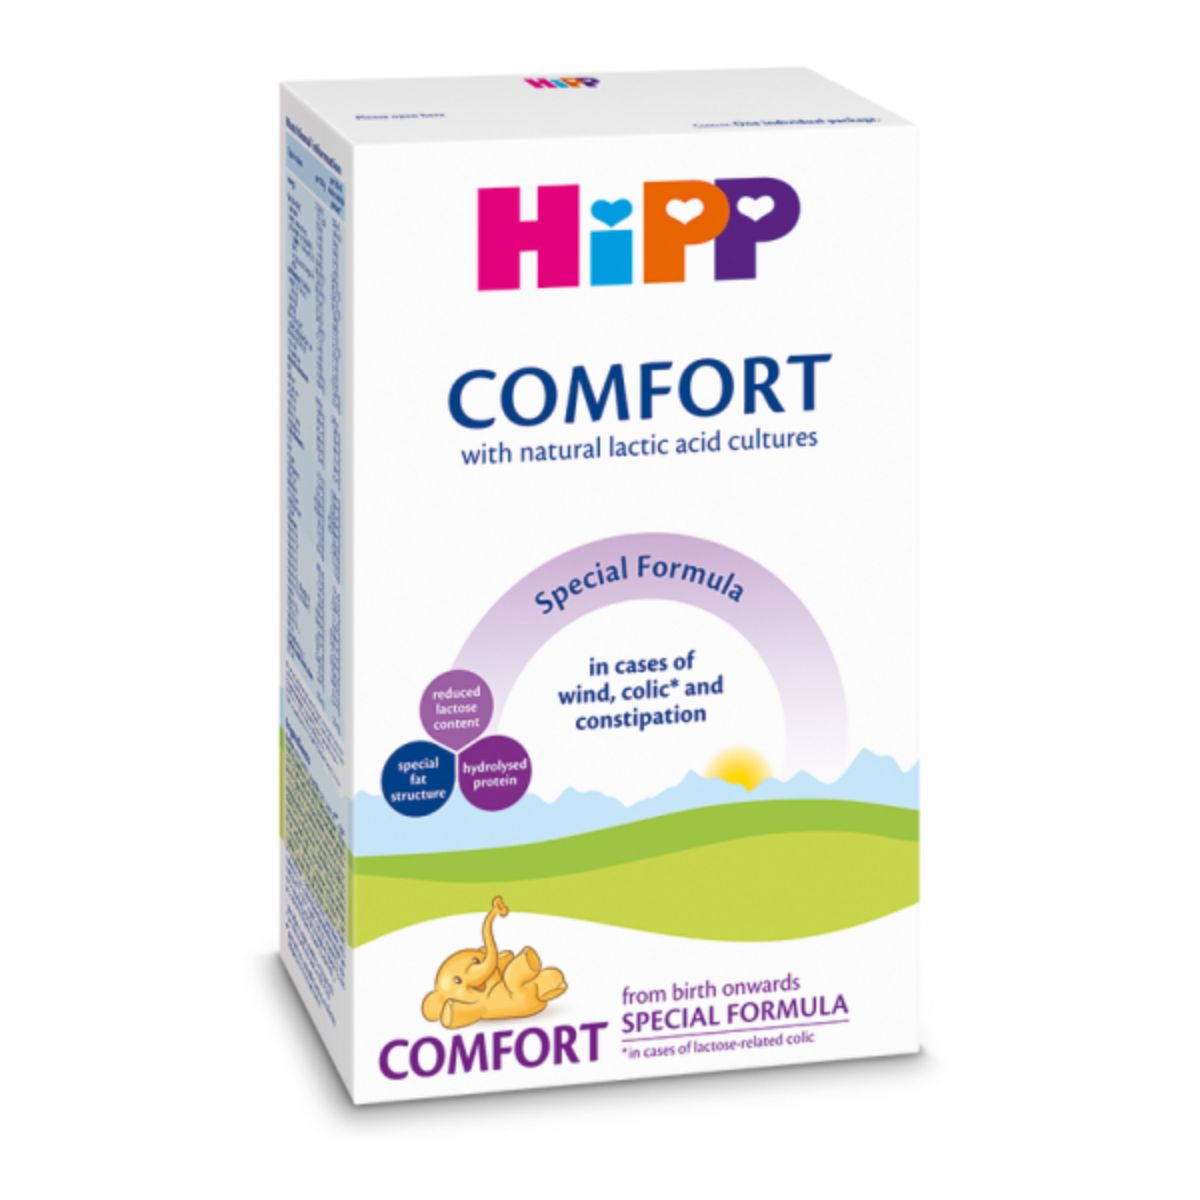 Lapte praf Hipp Comfort, formula de lapte speciala 300 g, 0 luni+ Hipp